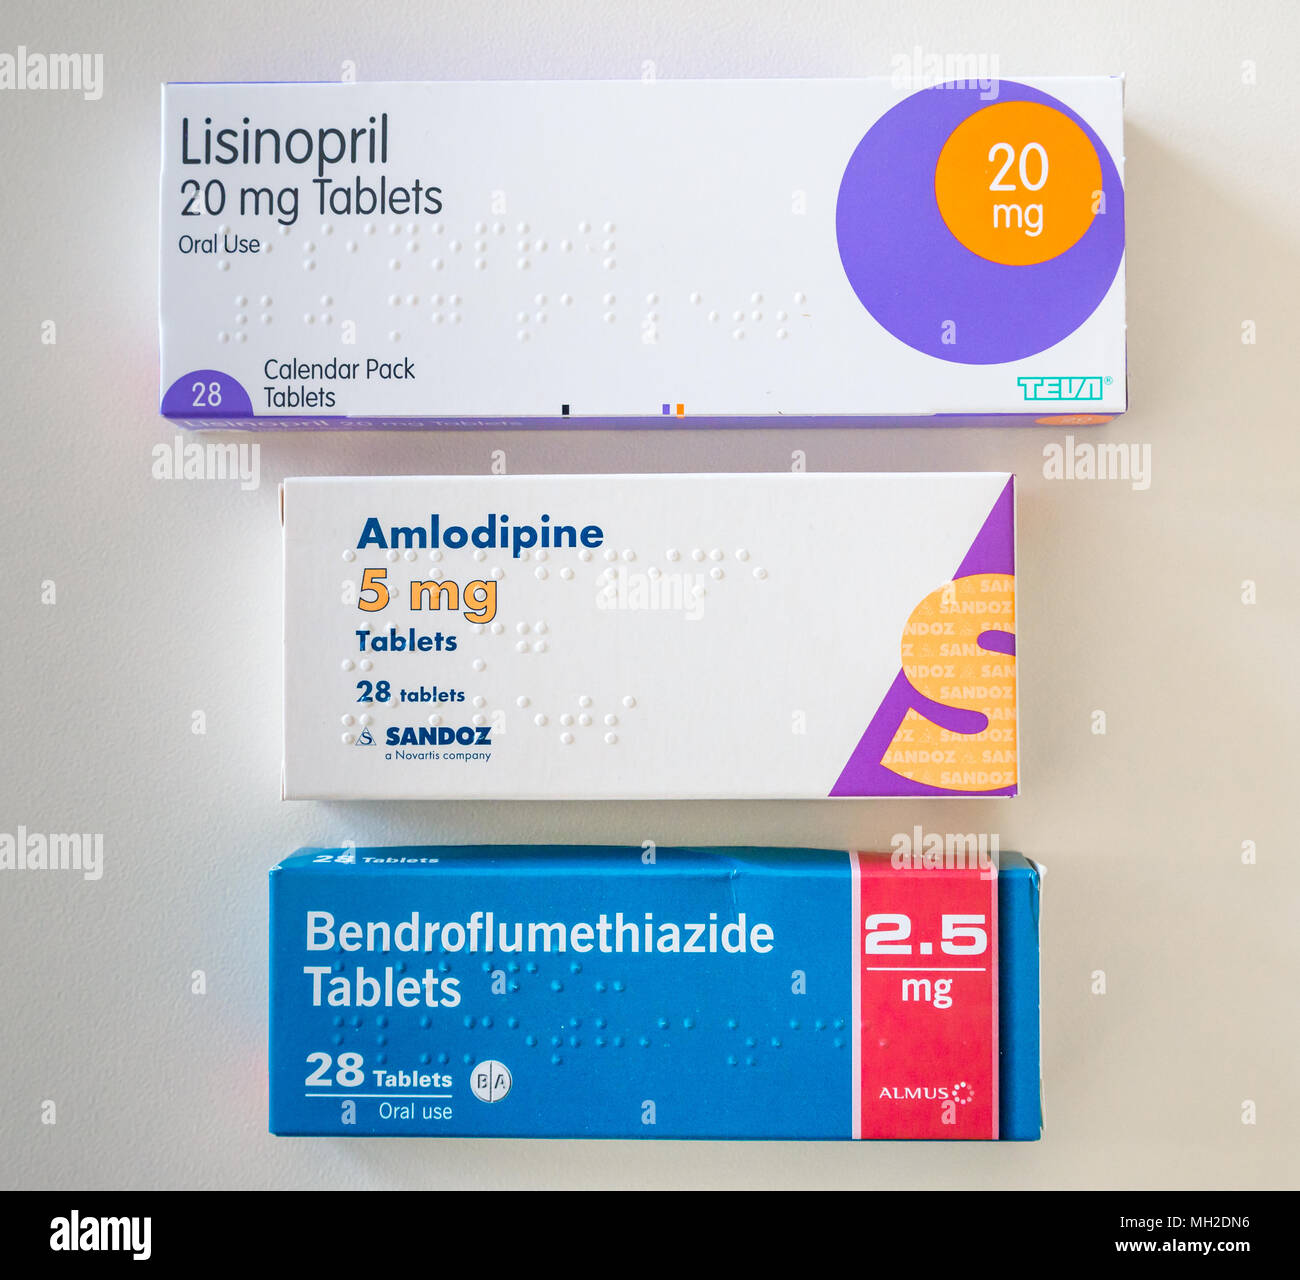 Packungen mit Tabletten für die Behandlung der Hypertonie oder  Bluthochdruck. Lisinopril, Amlodipin (norvasc) und Bendroflumethiazide  (Furosemide Stockfotografie - Alamy